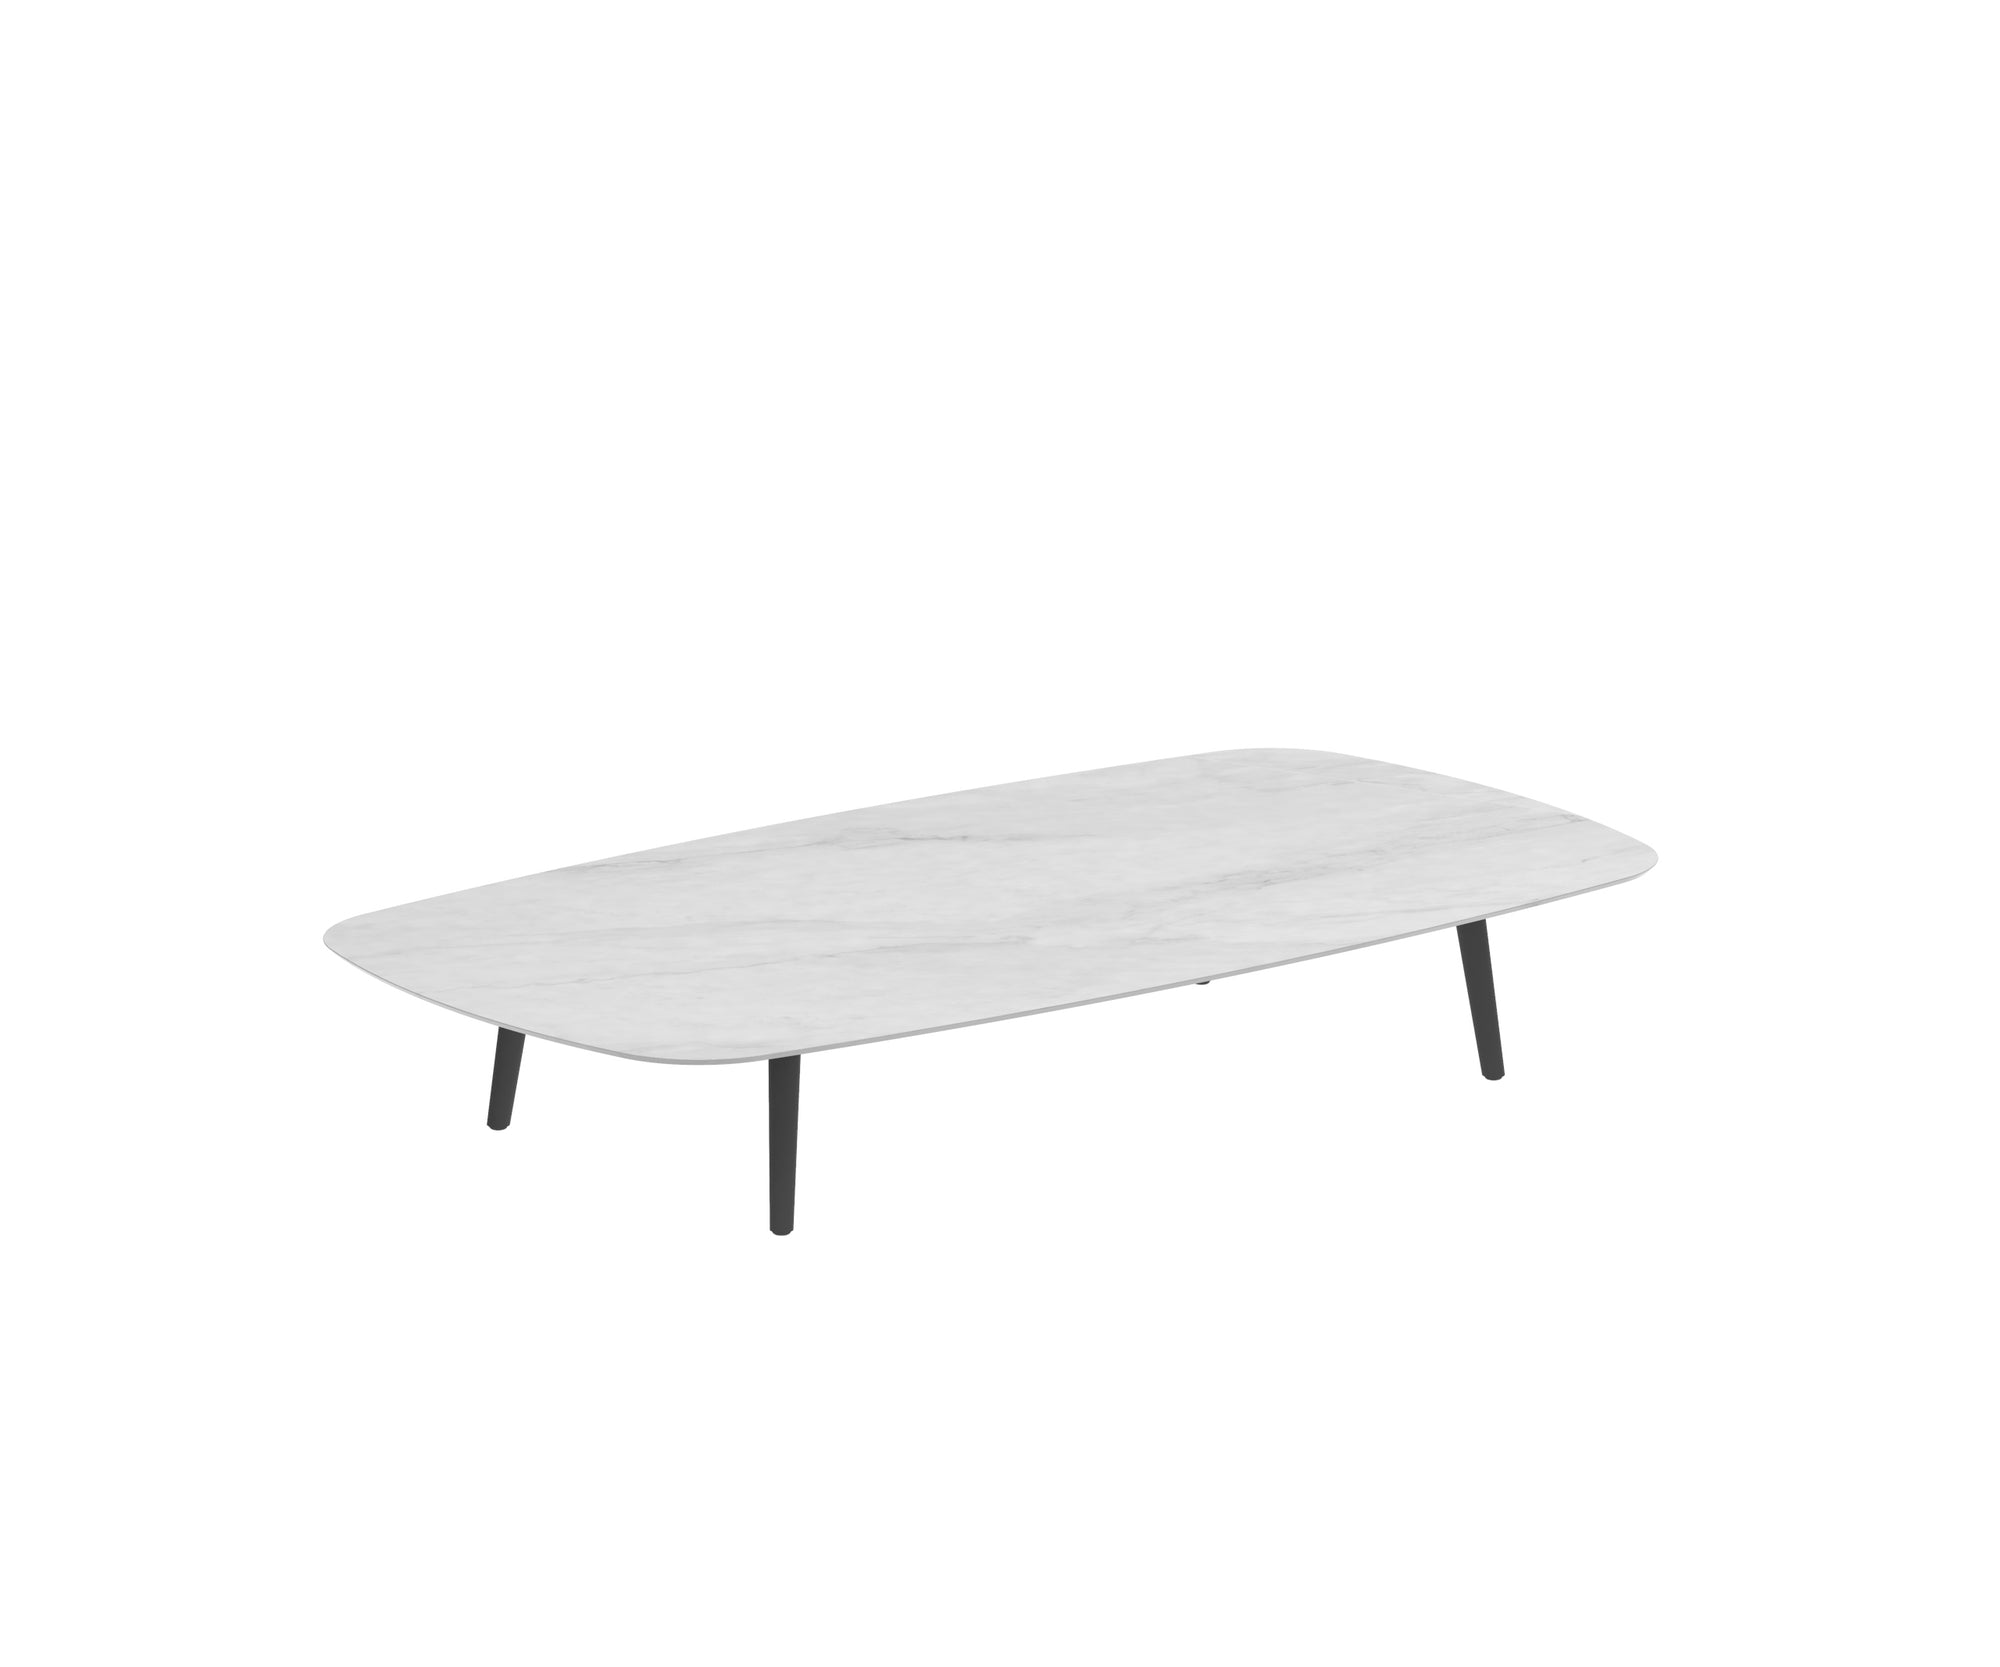 Styletto Rectangular Low Lounge Table | Royal Botania